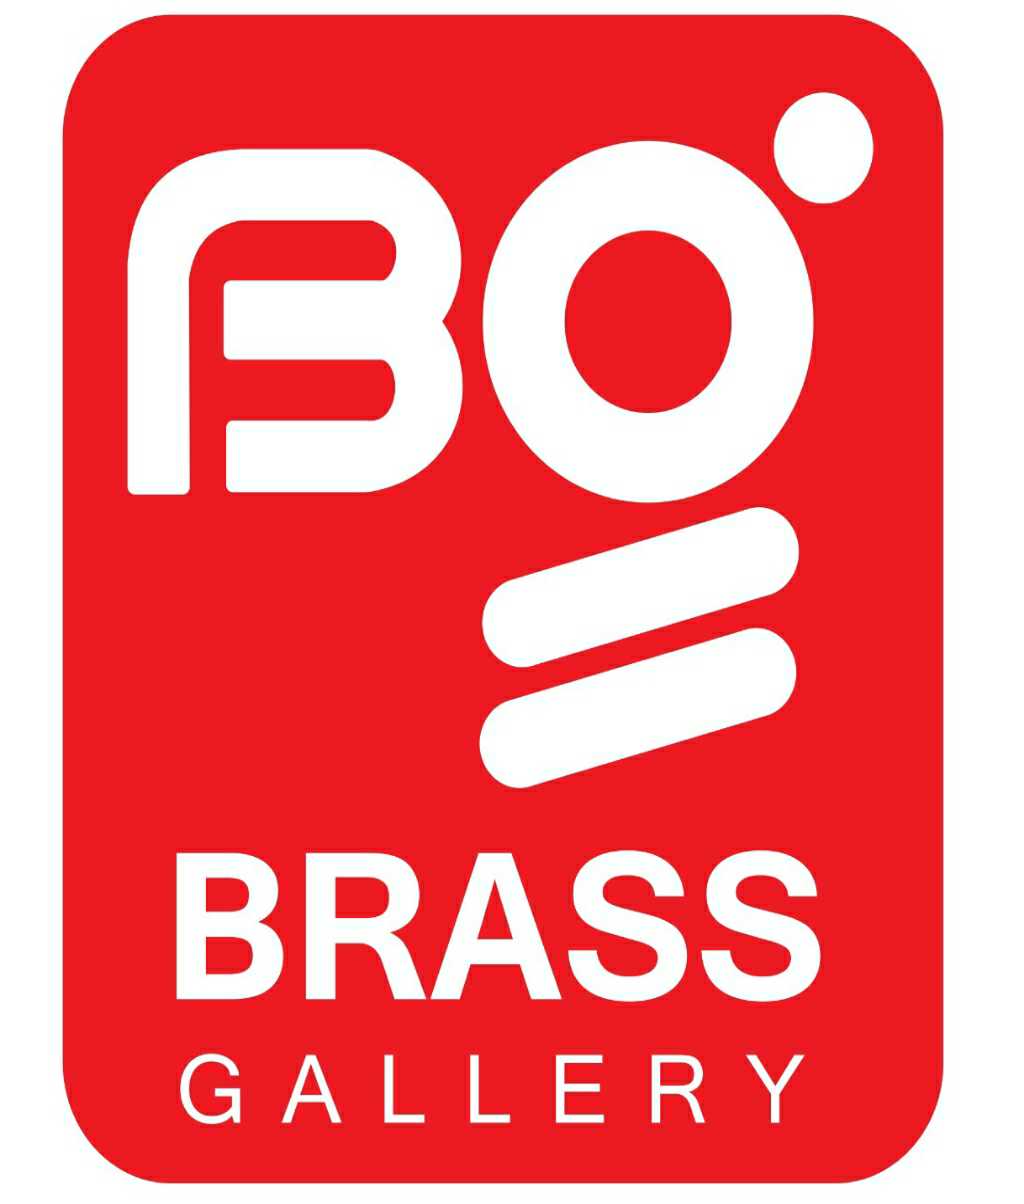 Brass Gallery